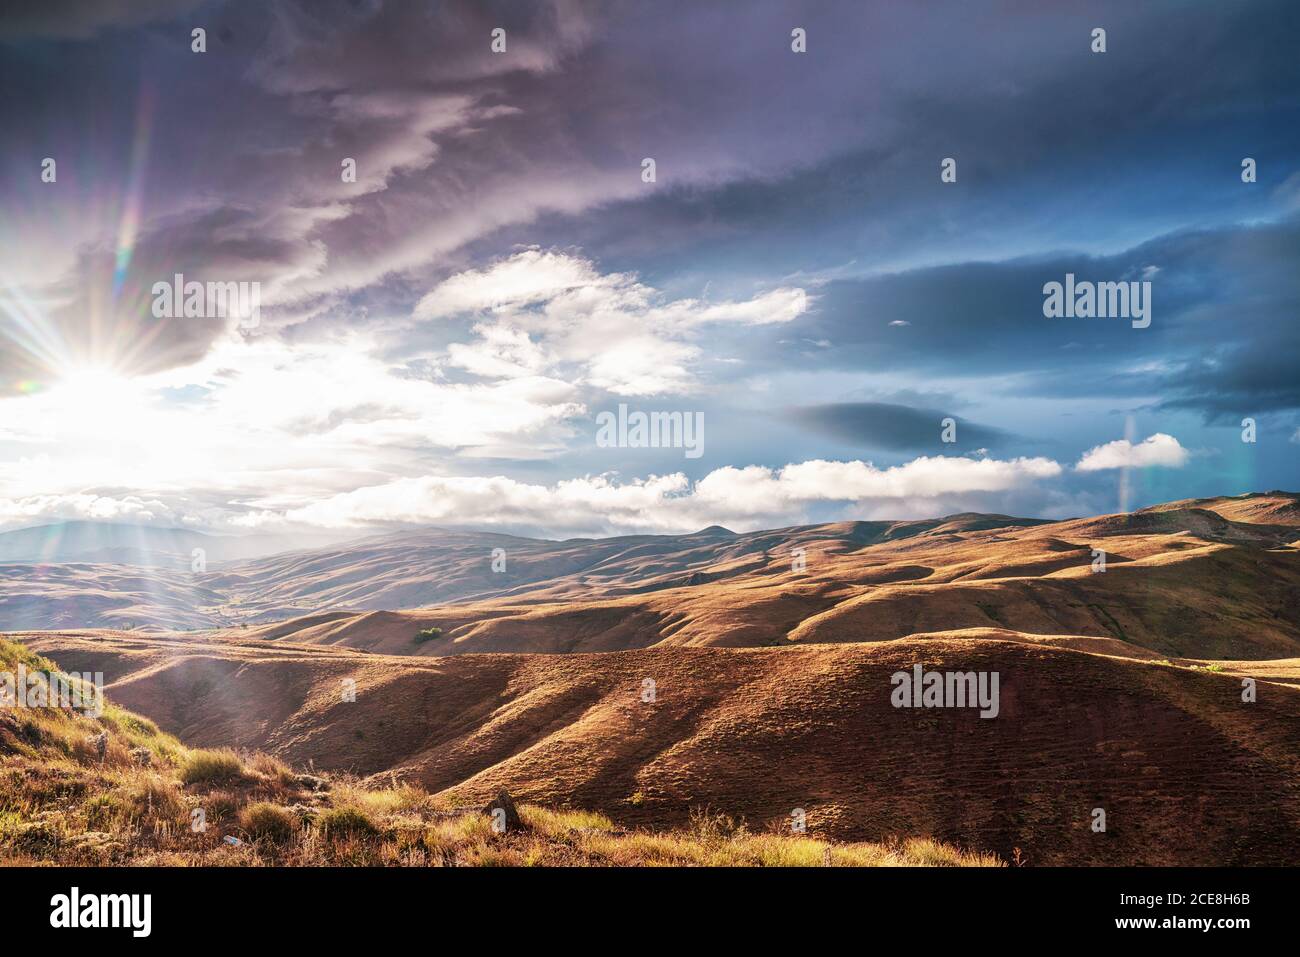 Colline e paesaggio rurale con cielo nuvoloso e fascio di sole in background. Foto di alta qualità Foto Stock